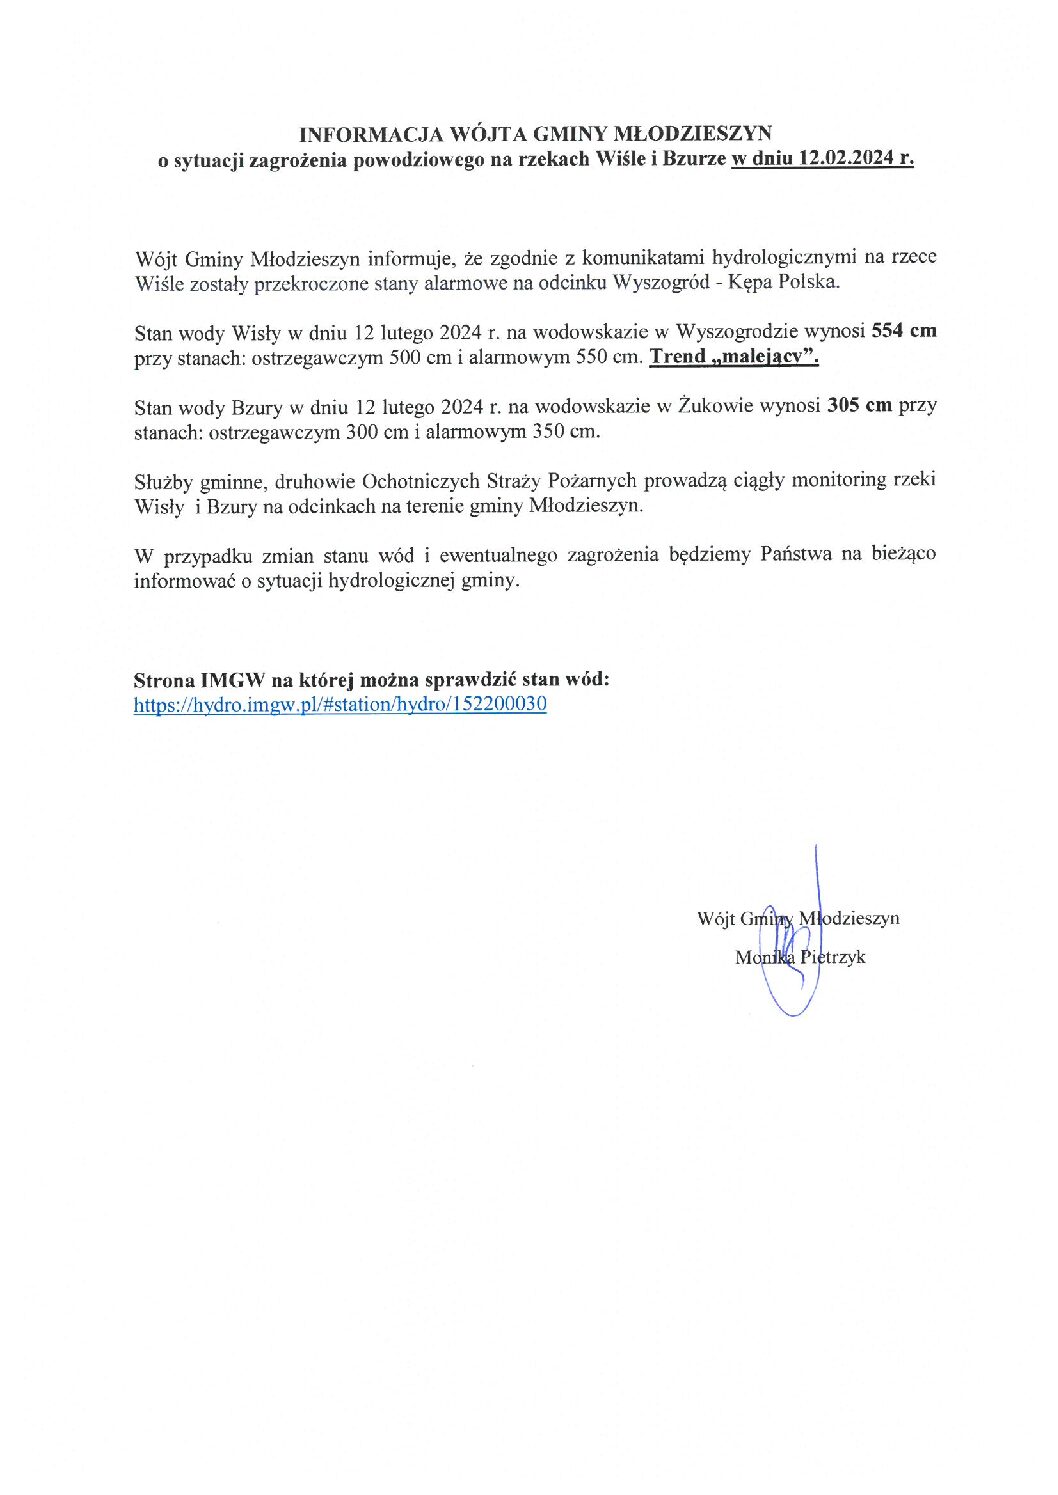 INFORMACJA WÓJTA GMINY MŁODZIESZYN o sytuacji zagrożenia powodziowego na rzekach Wiśle i Bzurze w dniu 12.02.2024 r.